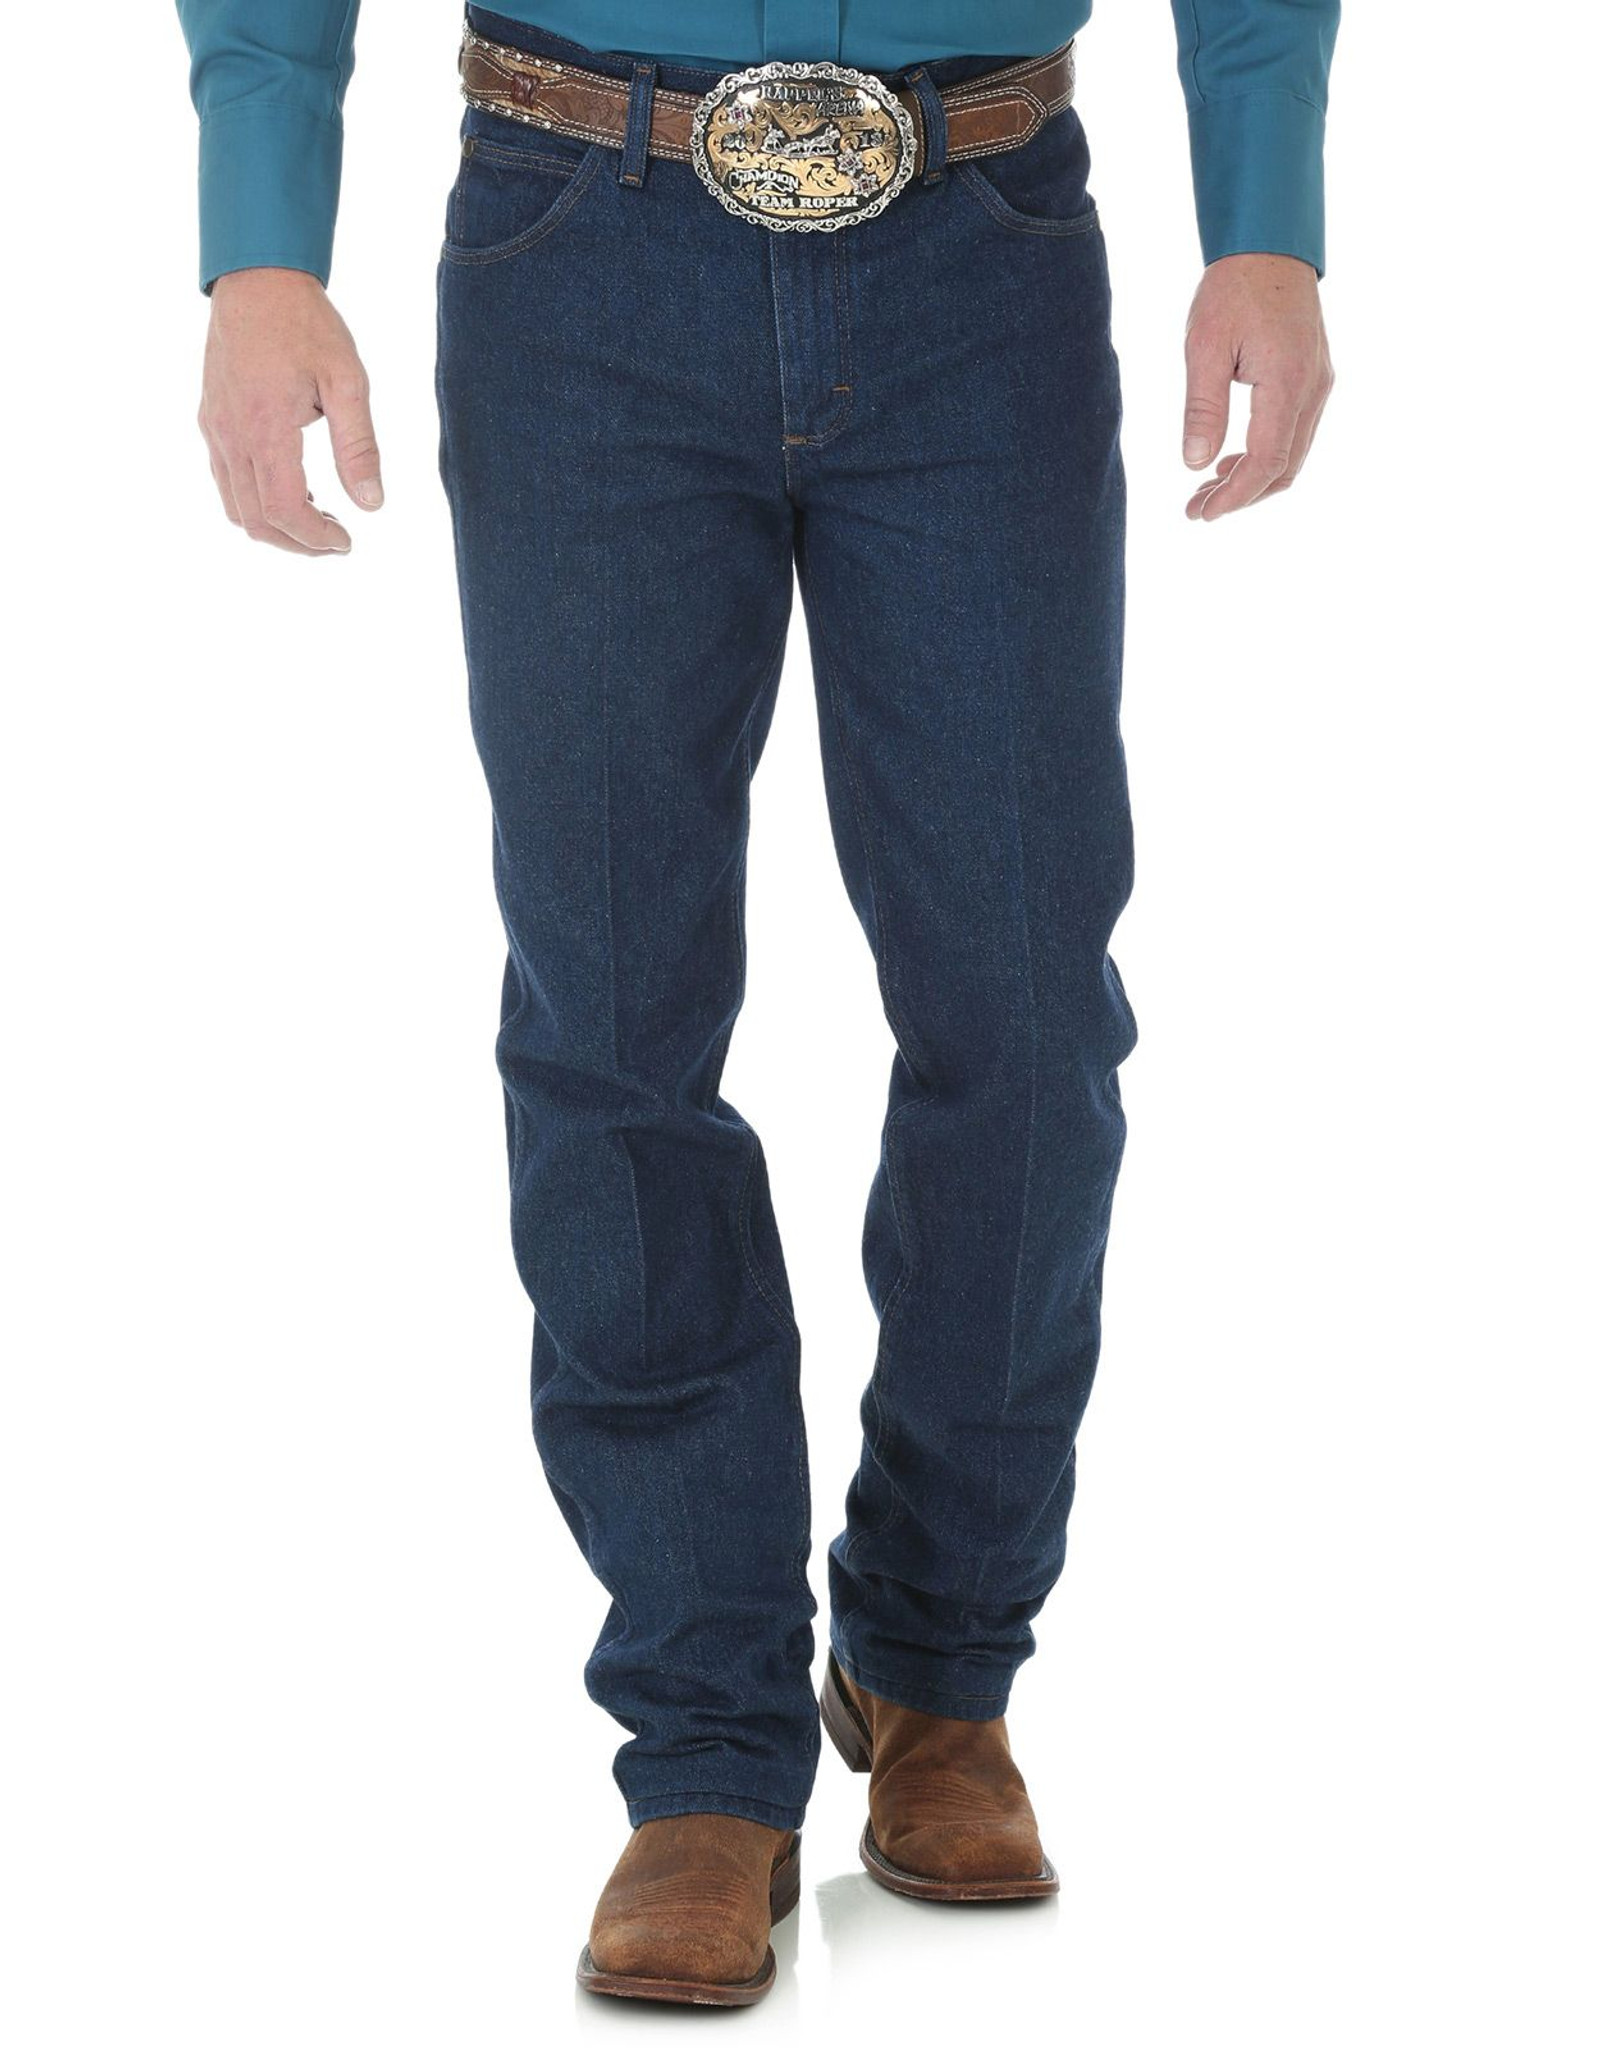 Wrangler Men's 36 Slim Mid Rise Slim Fit Boot Cut Jeans - Prewash